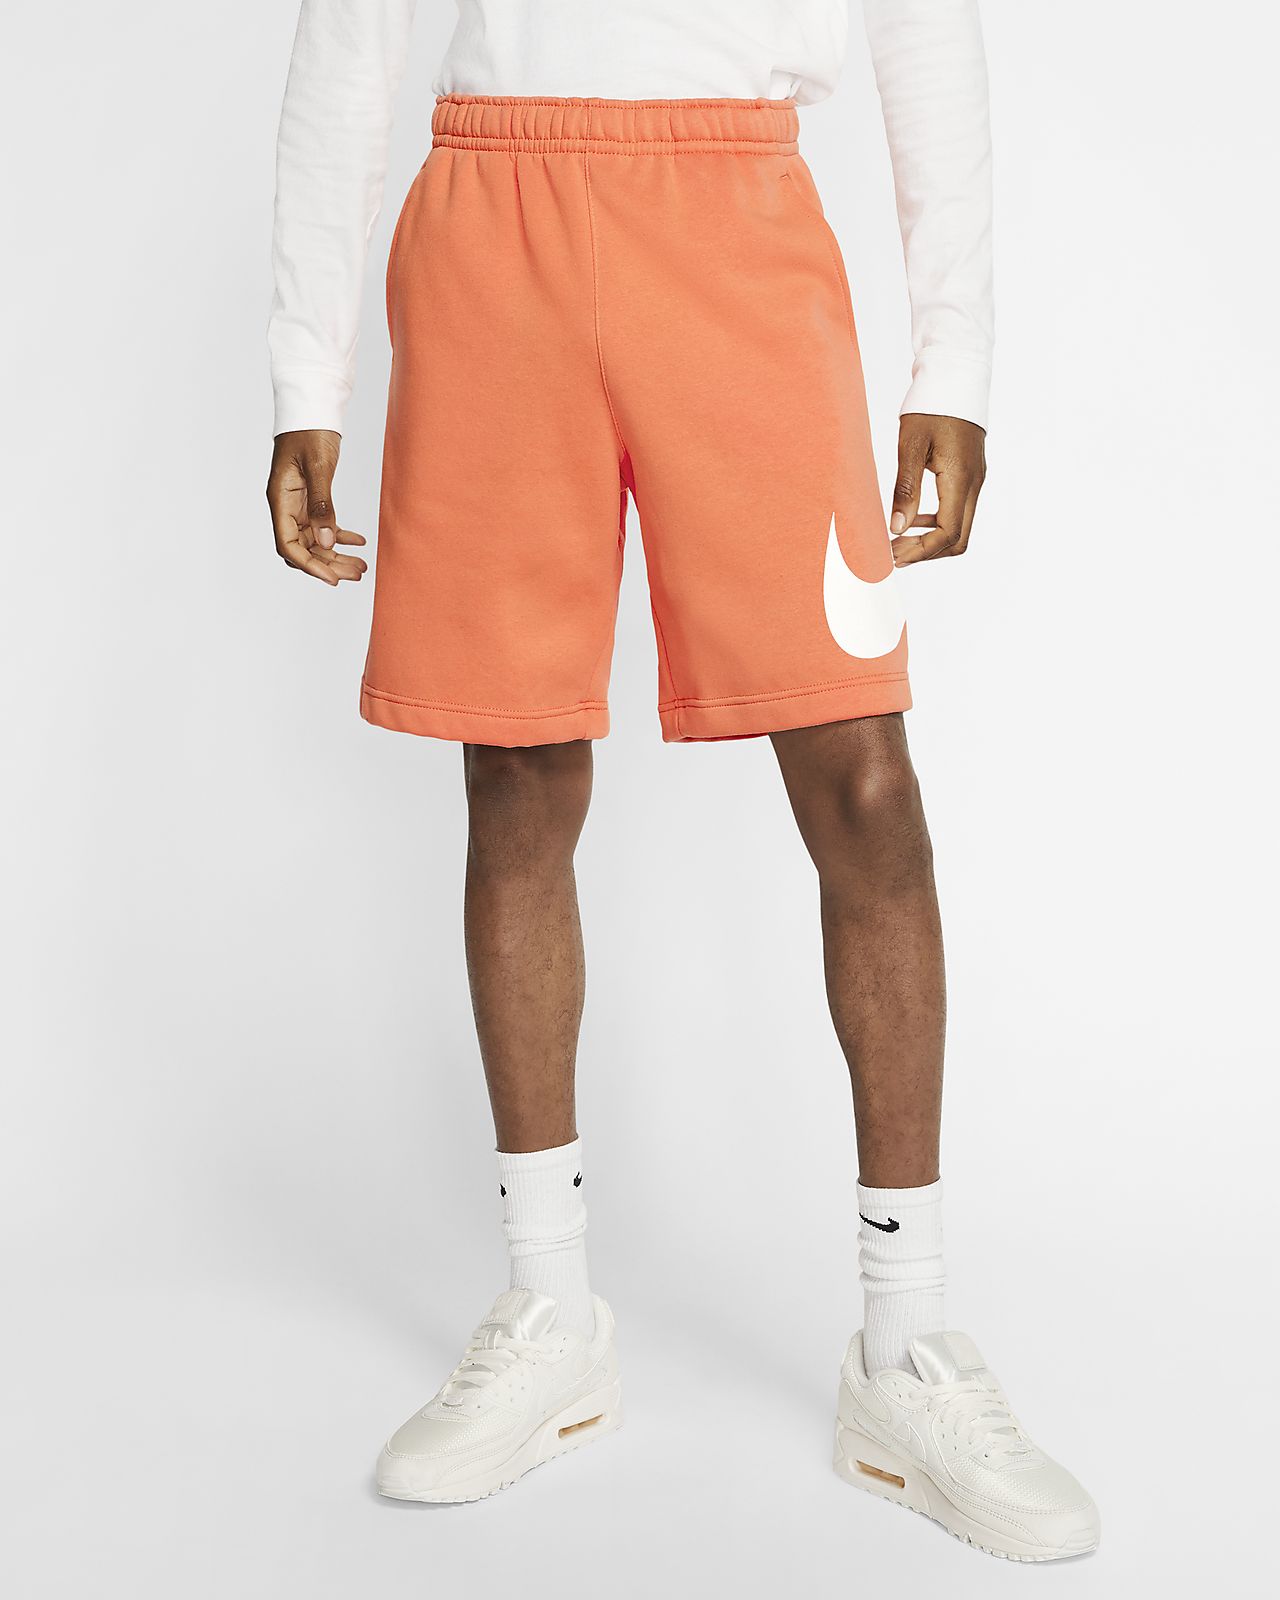 nike orange shorts